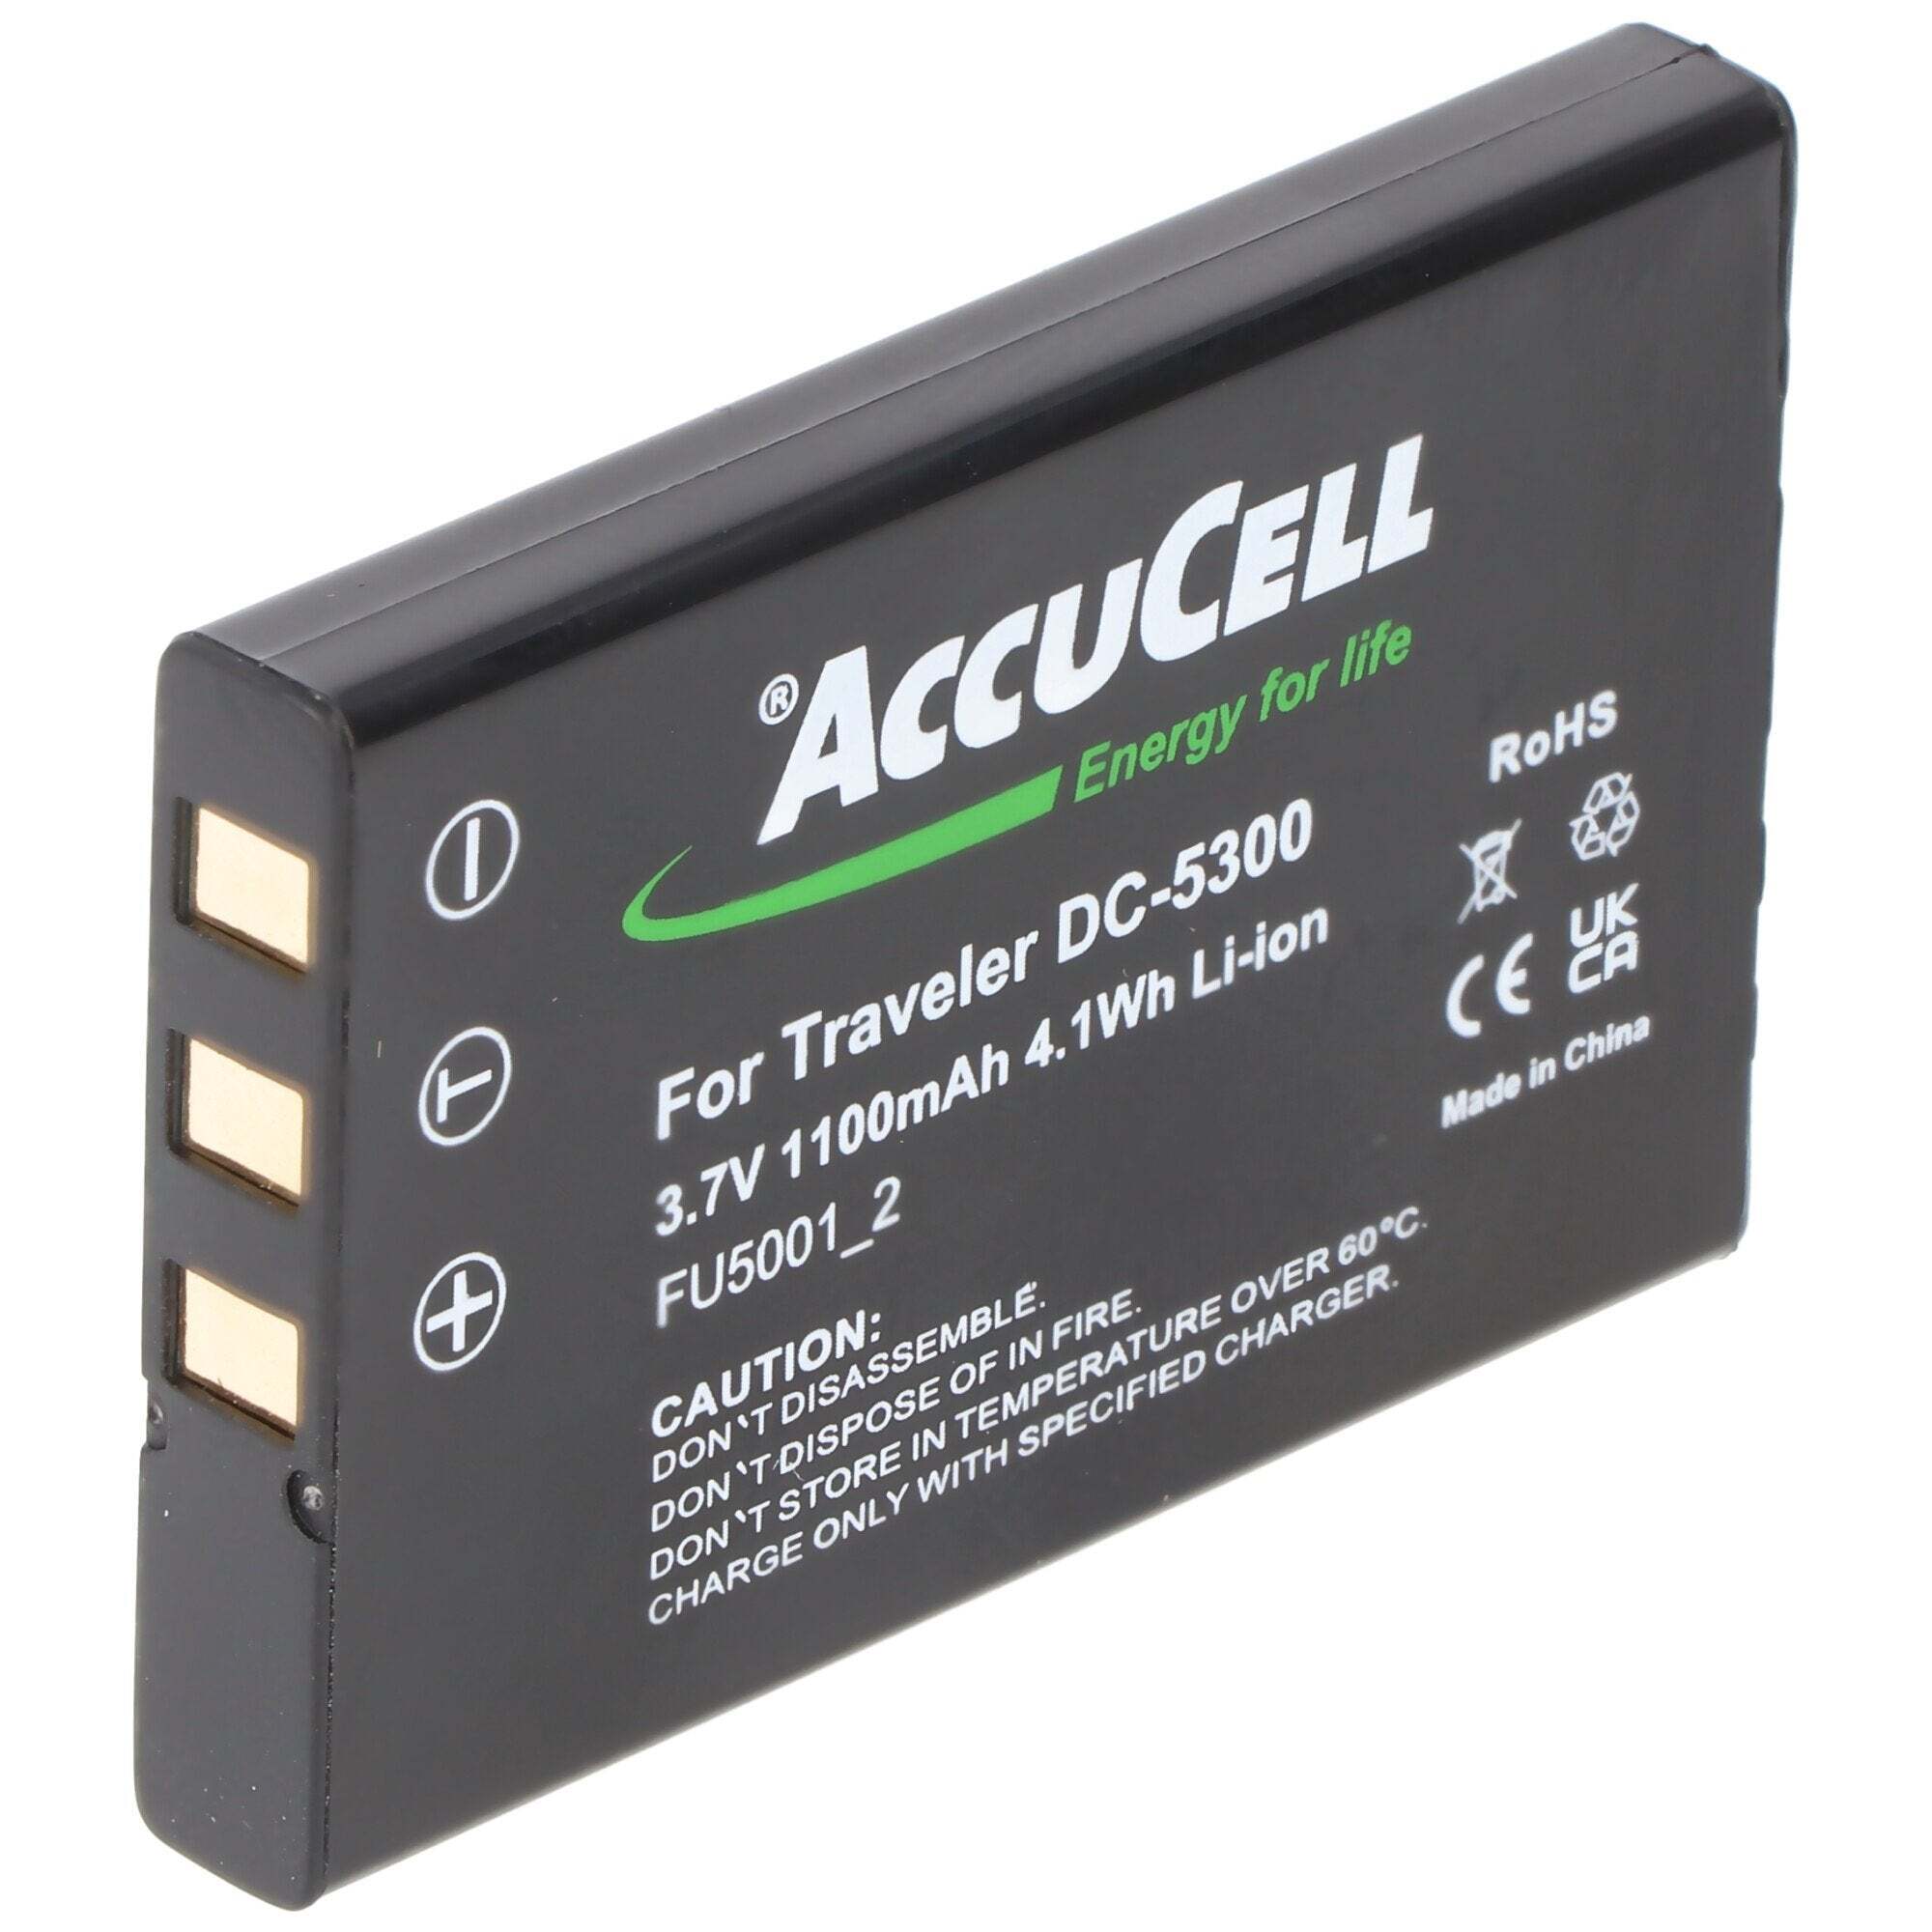 ACCUCELL AccuCell-batterij geschikt voor Traveler DC-6300, EE-Pack 330